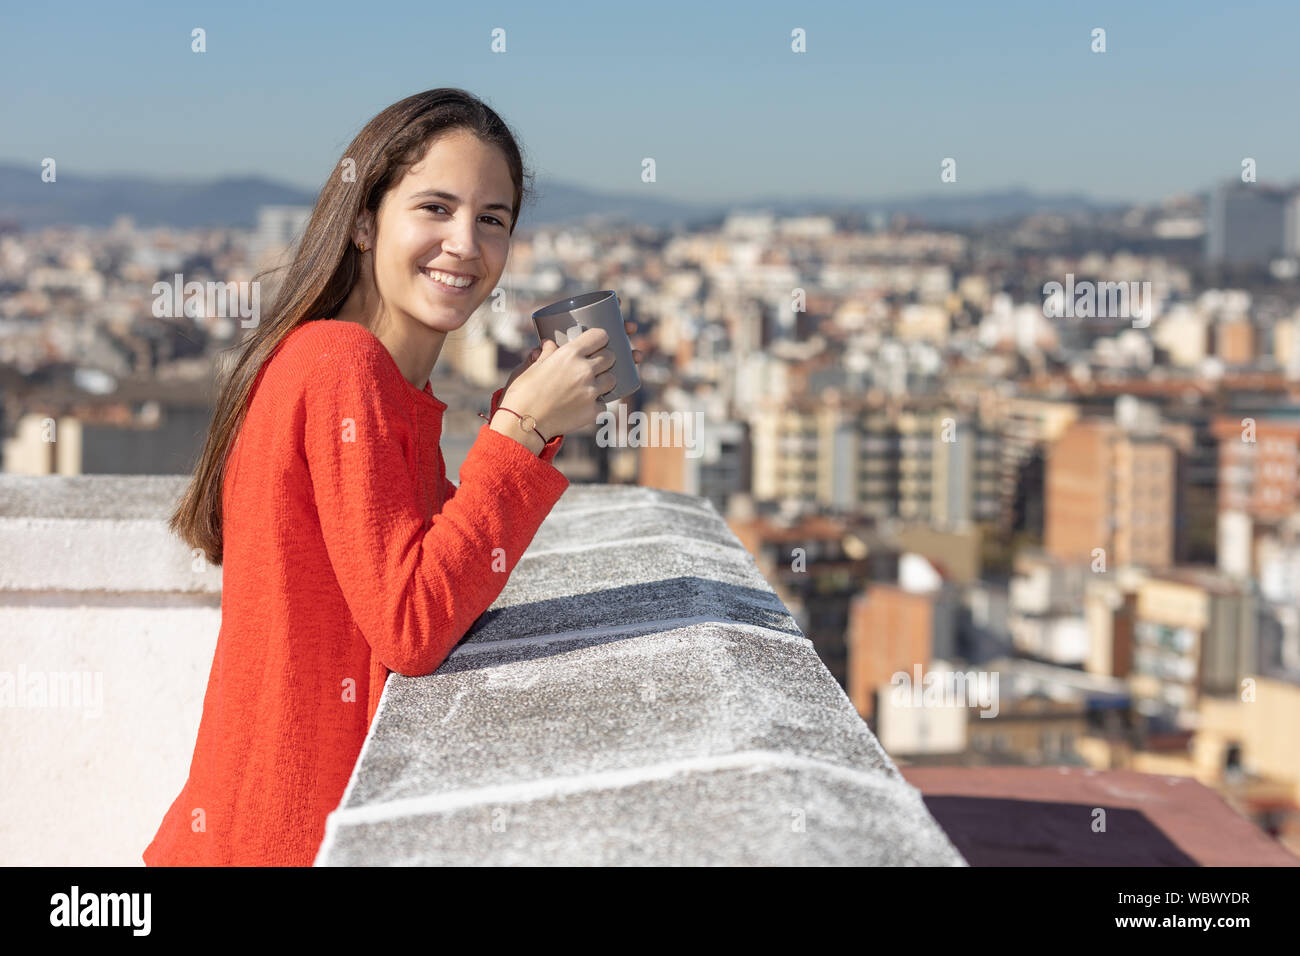 Adolescente en la terraza tomando una taza de te sonriendo Stock Photo